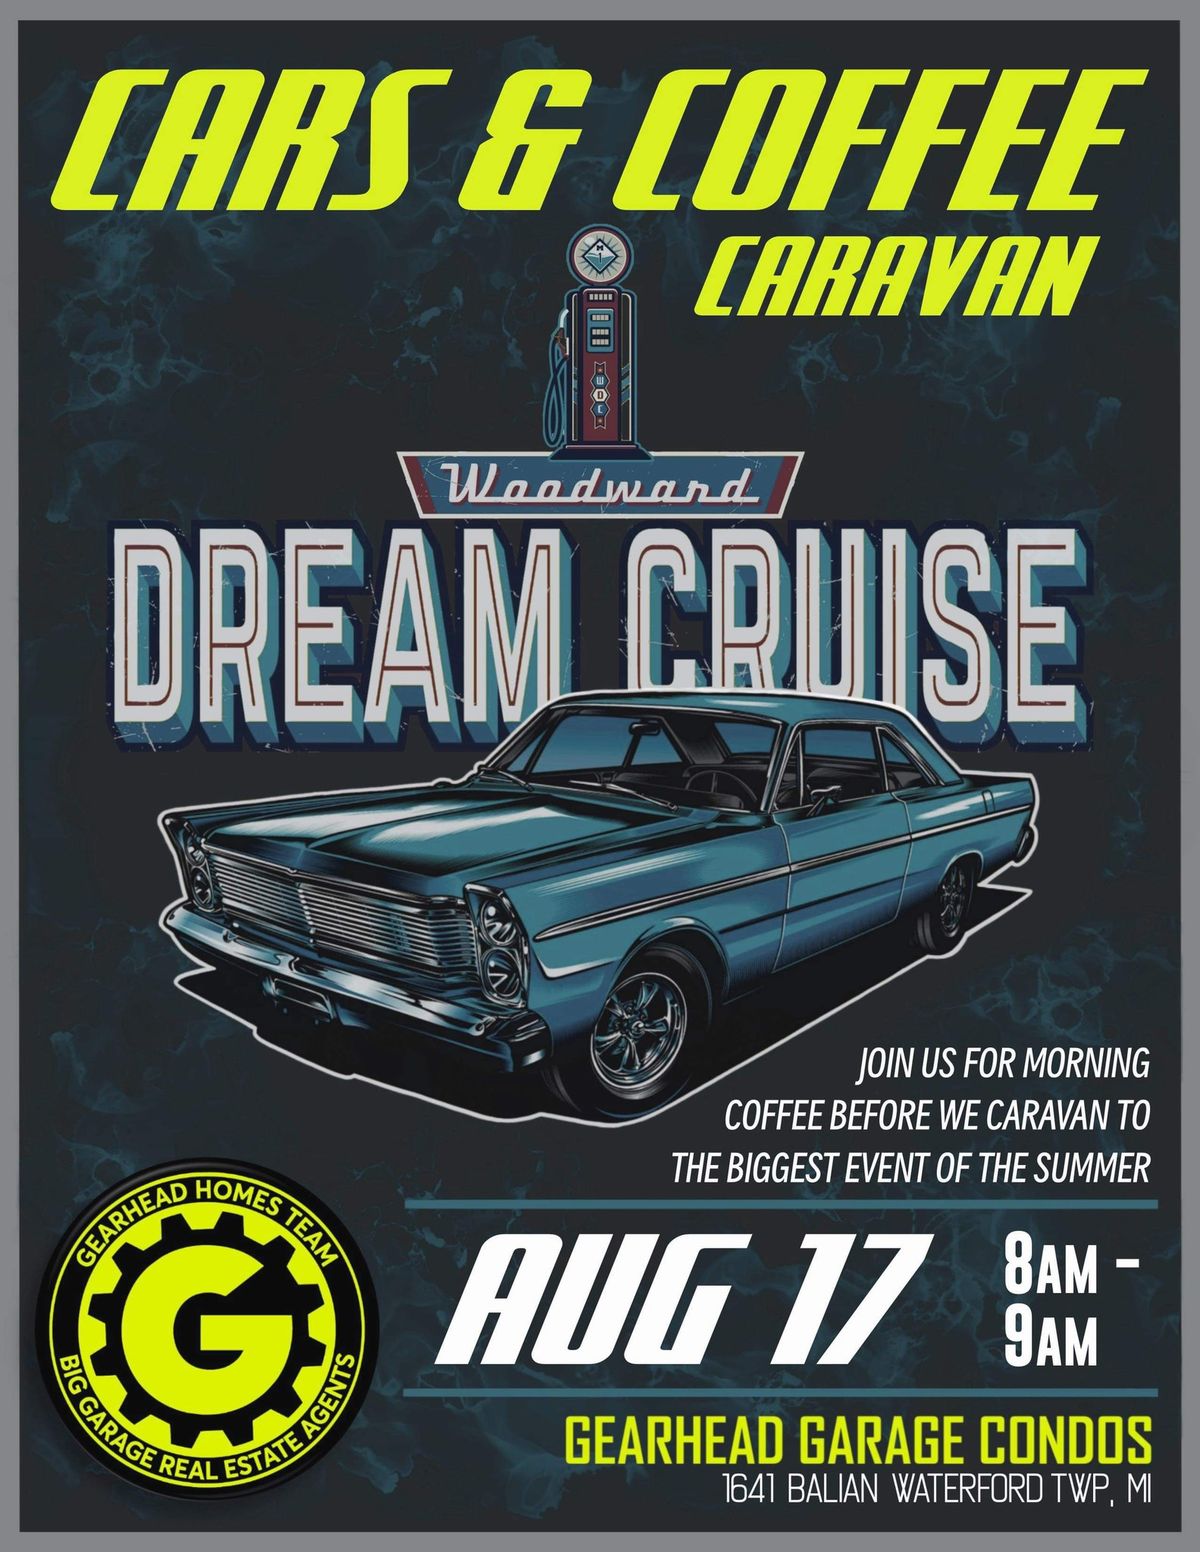 Woodward Dream Cruise Caravan 